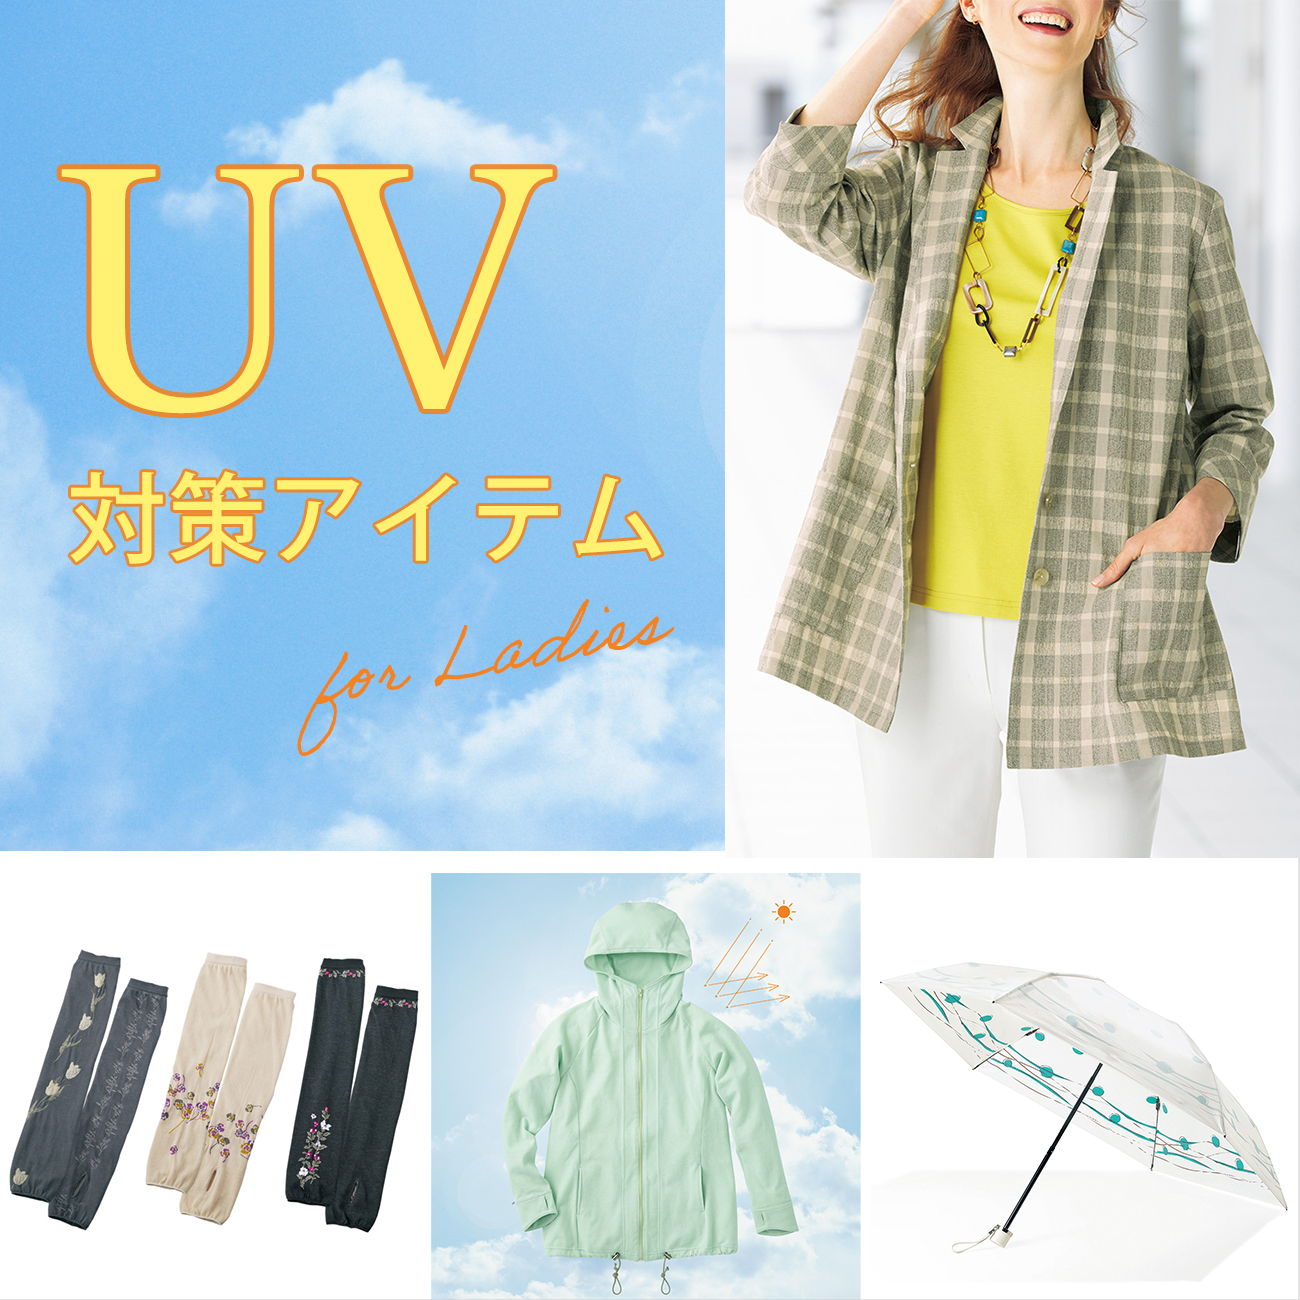 【特集】UV対策アイテム for Ladies